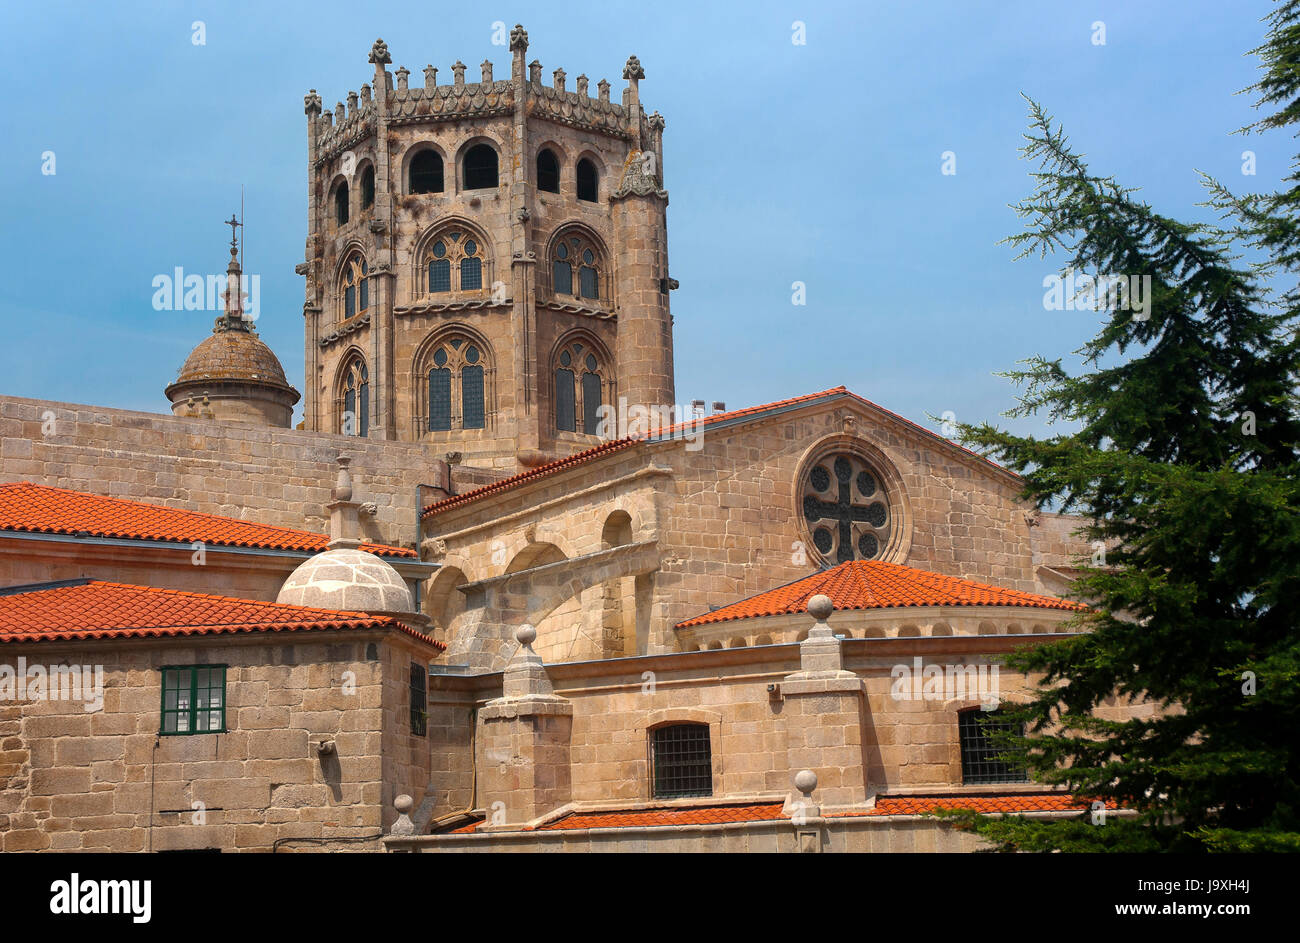 La Cattedrale gotica di San Martin de Tours - XII secolo, Orense, regione della Galizia, Spagna, Europa Foto Stock